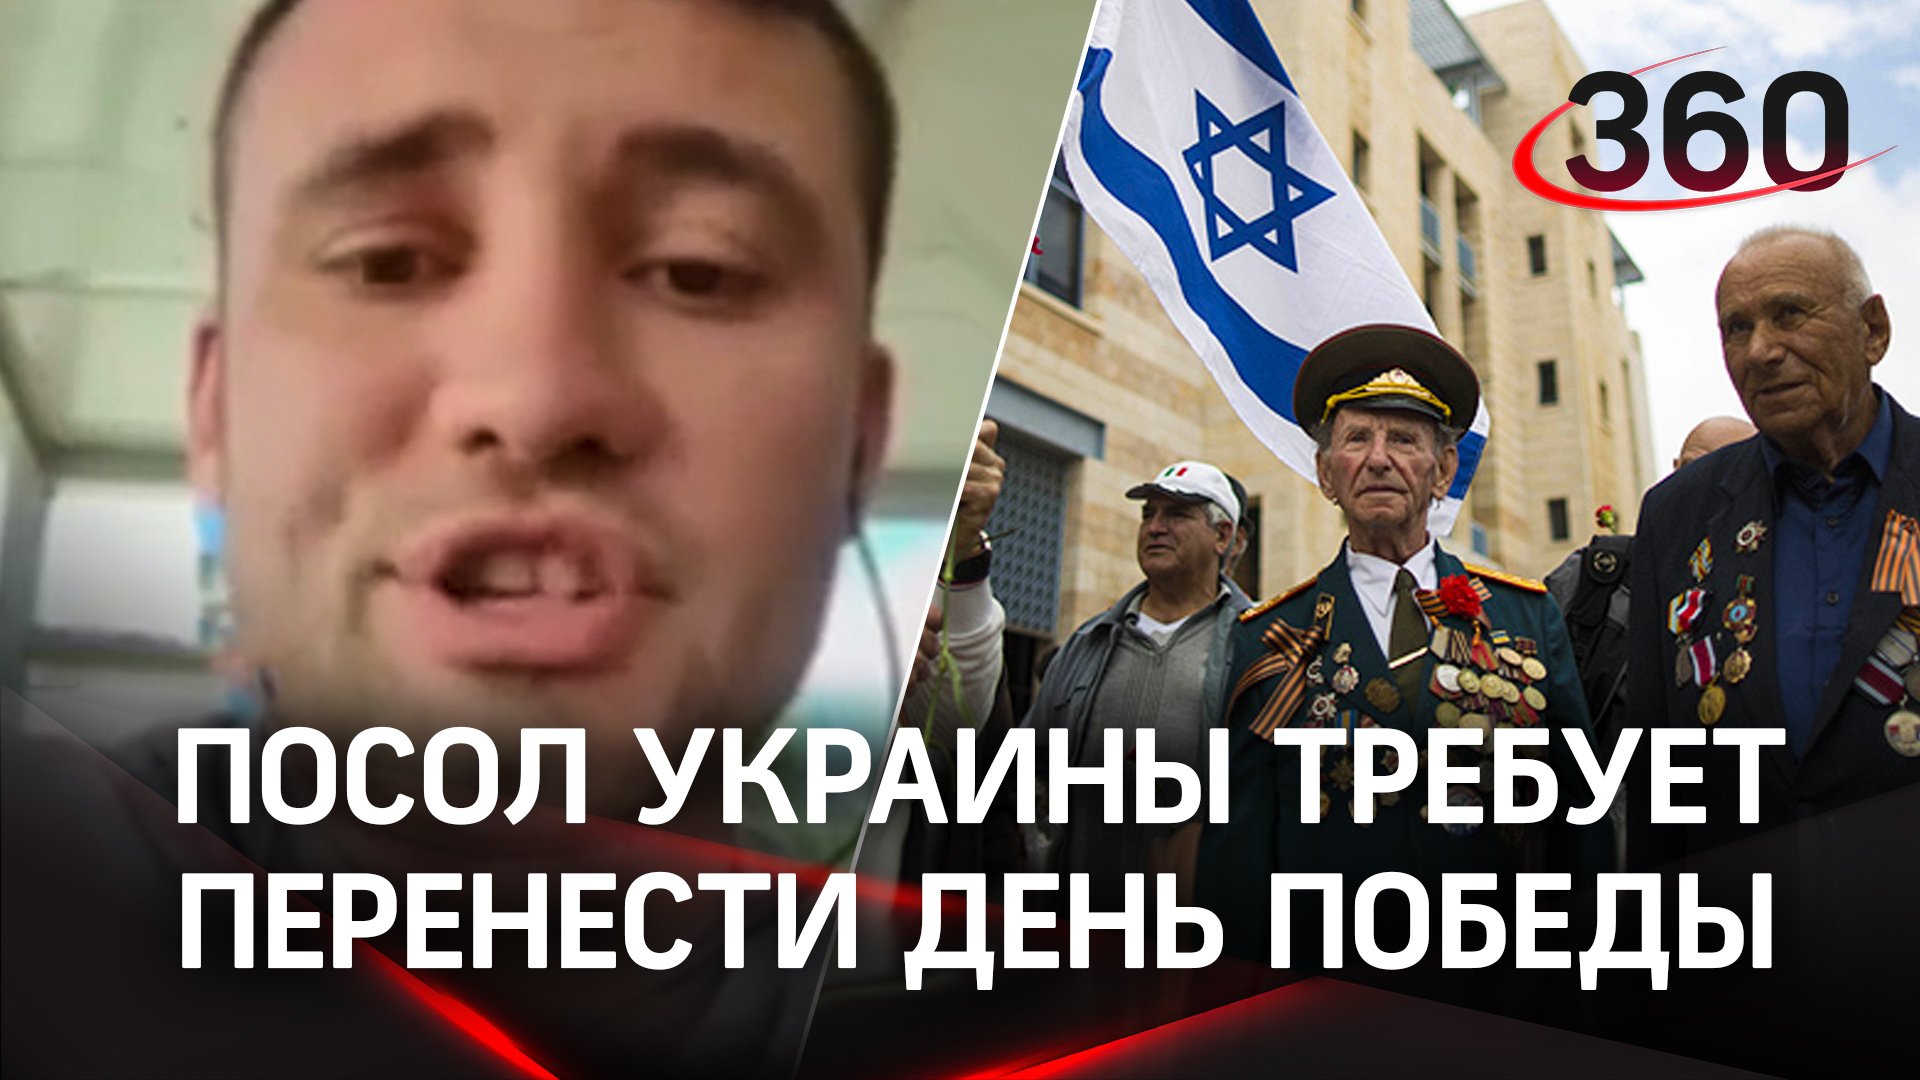 Перенести День Победы просил посол Украины в Израиле - сорвал хейт от местных